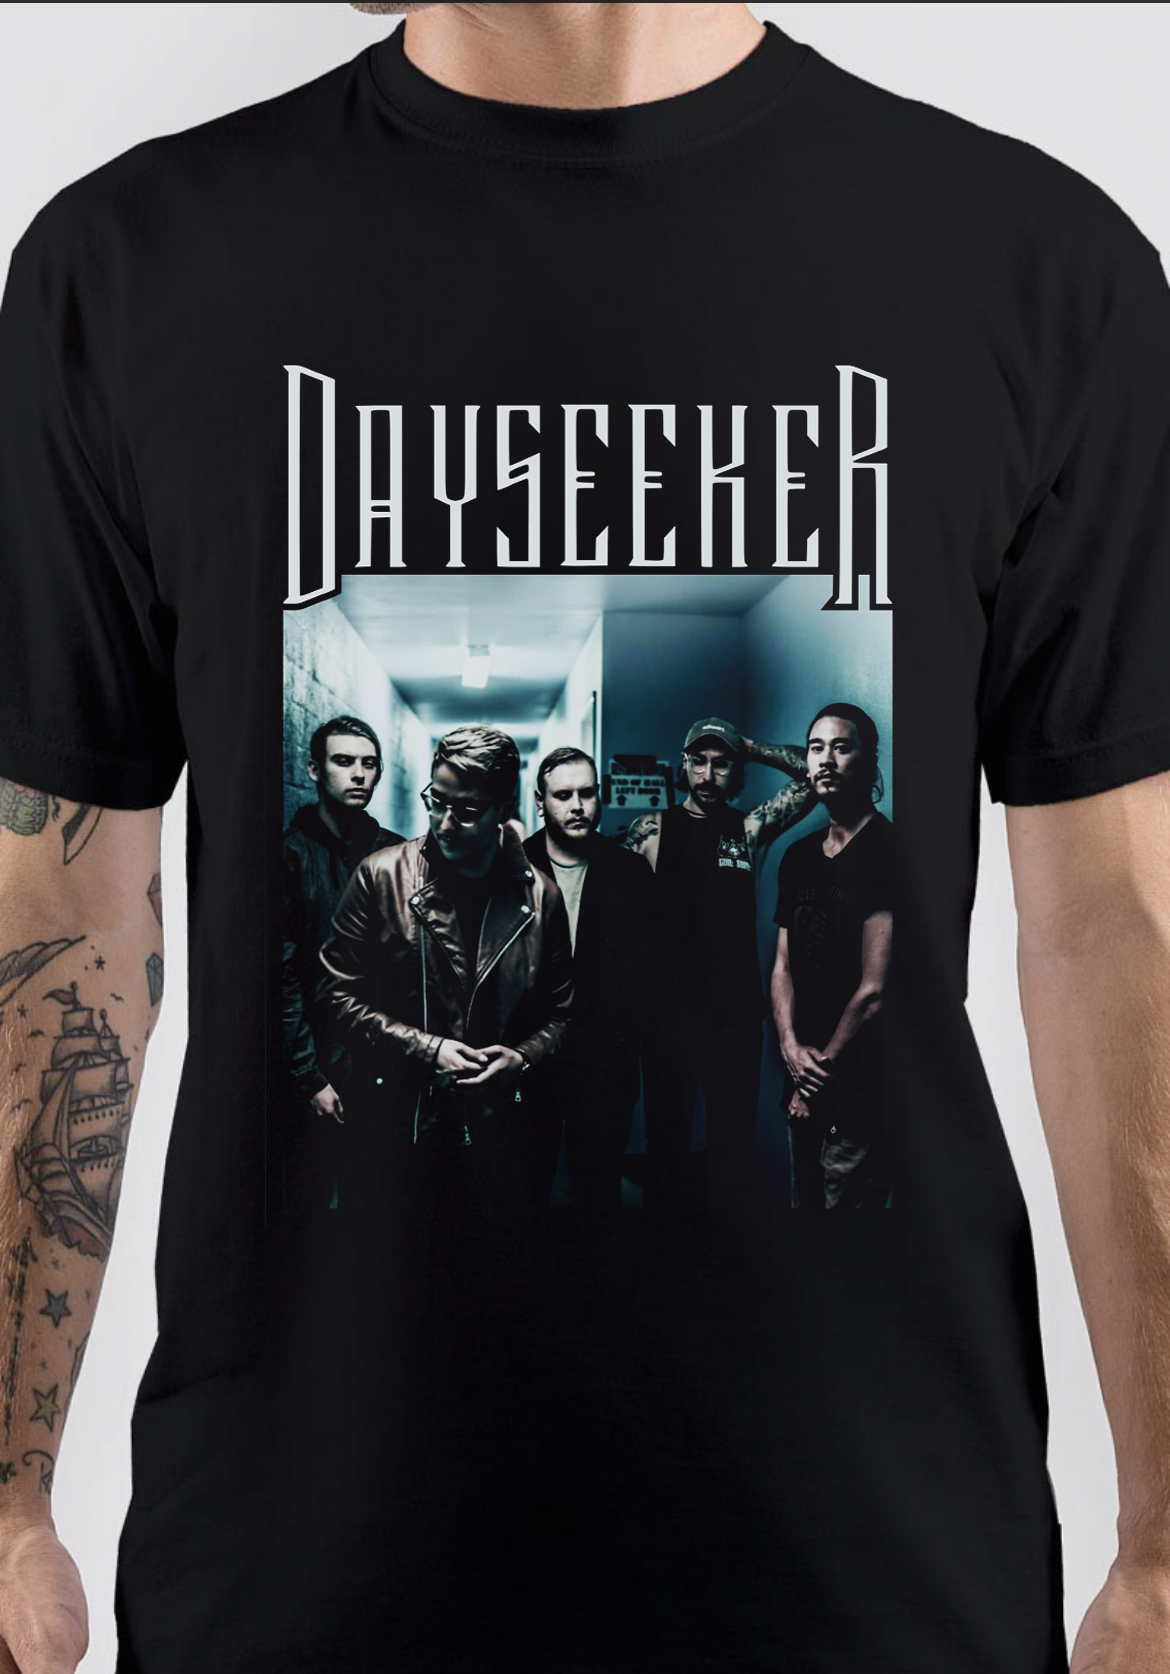 Dayseeker T-Shirt And Merchandise